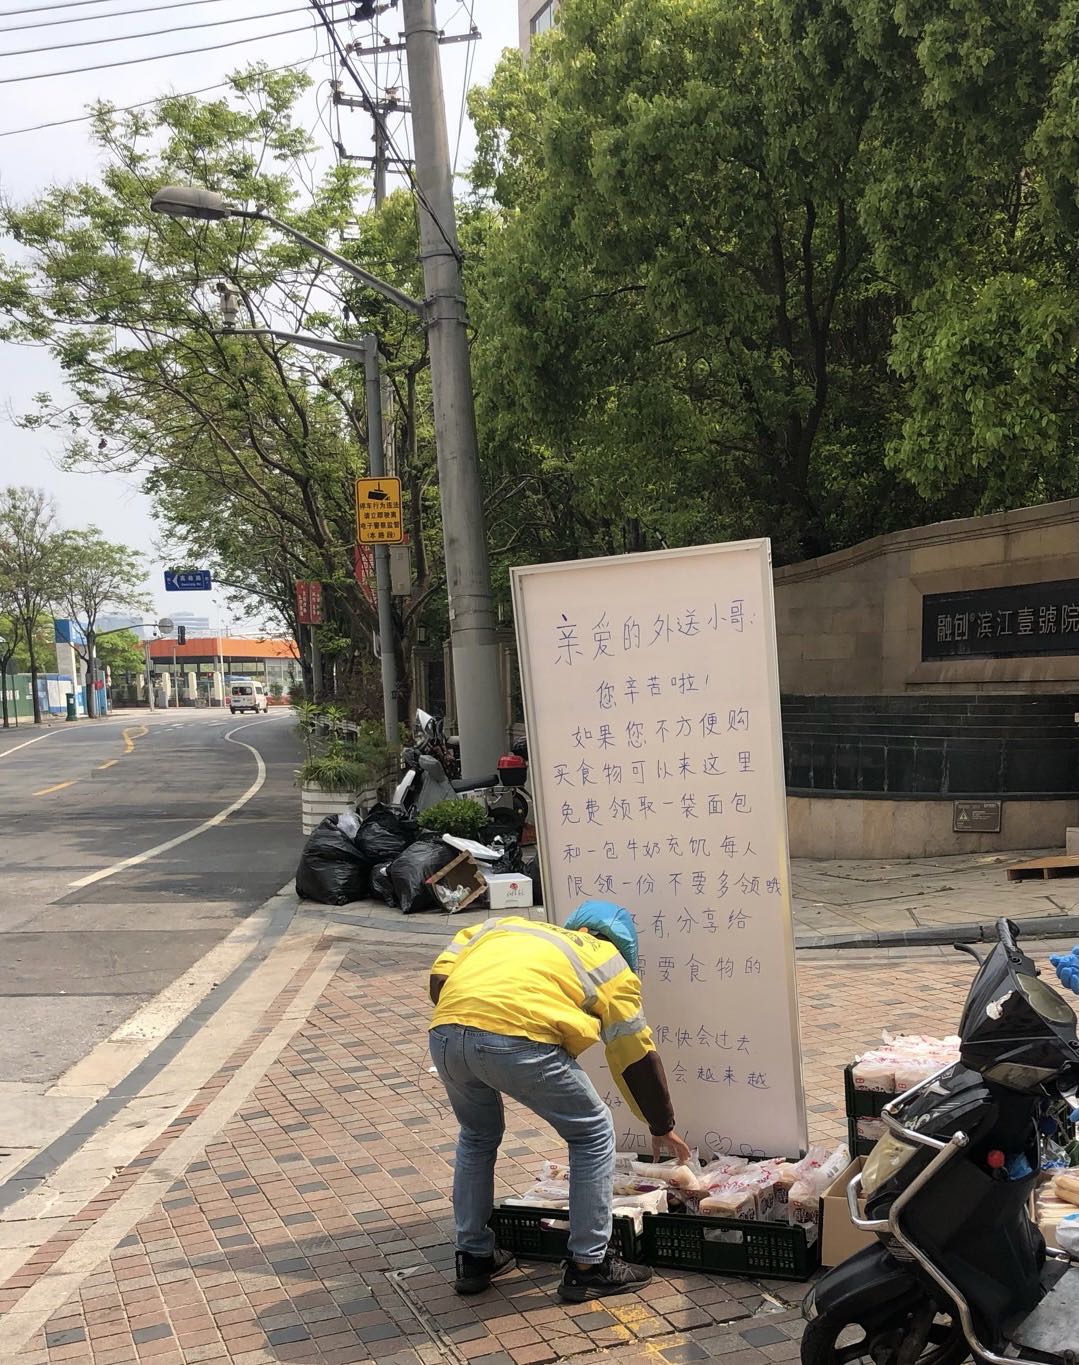 不期而遇的温暖 上海市民自发为外卖小哥提供免费面包牛奶